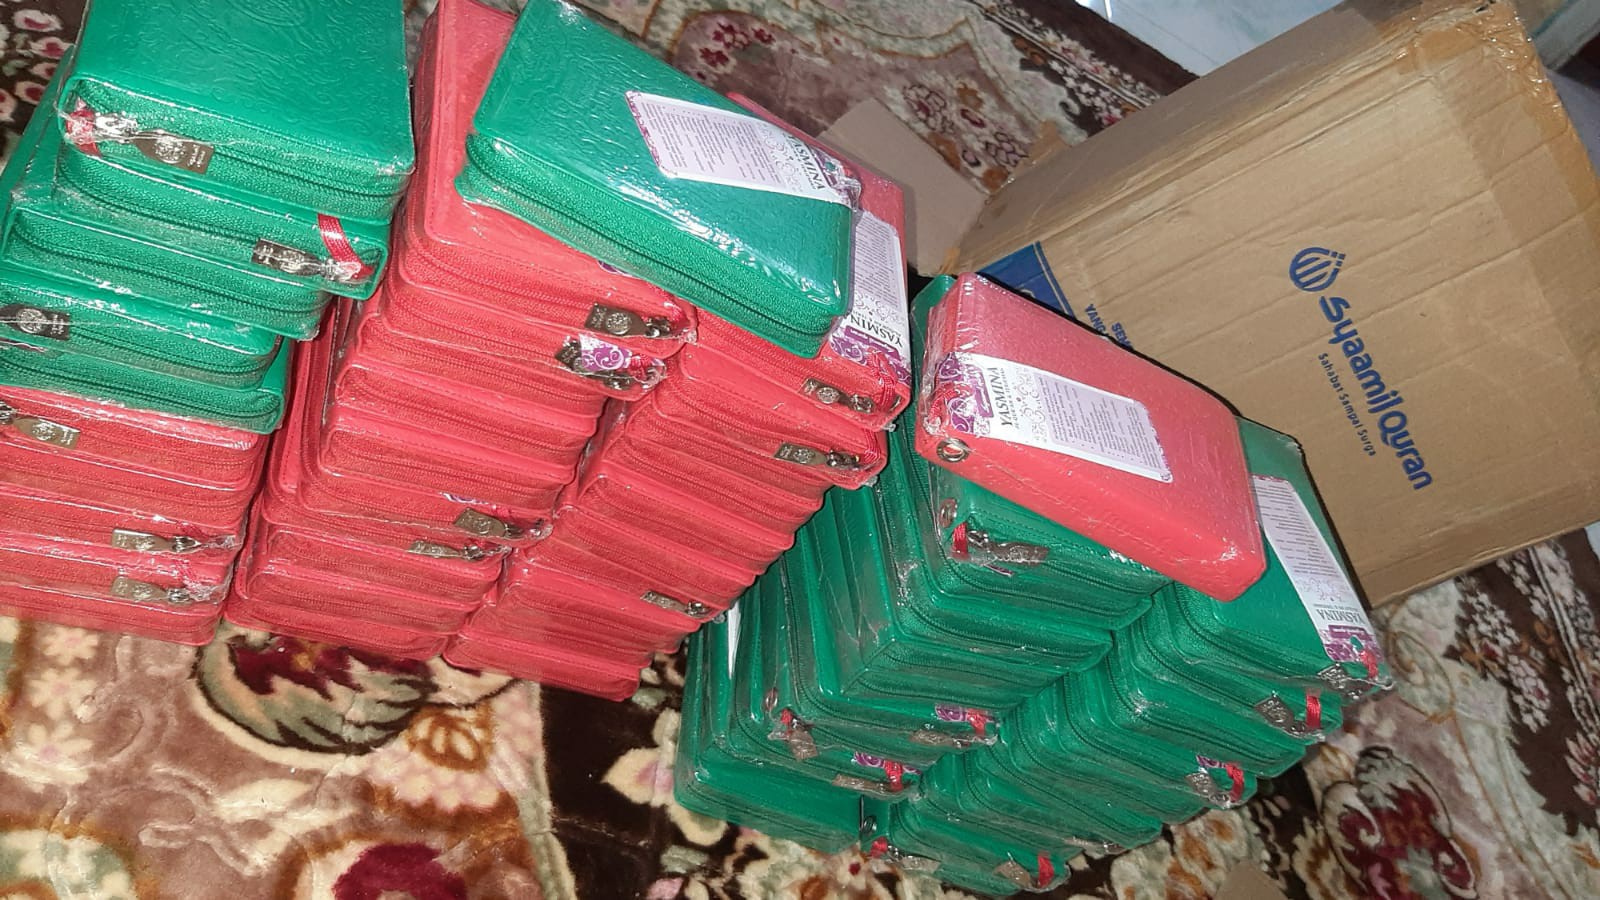 Distribusi Mushaf Quran Ke RQ PPA Langsa Aceh